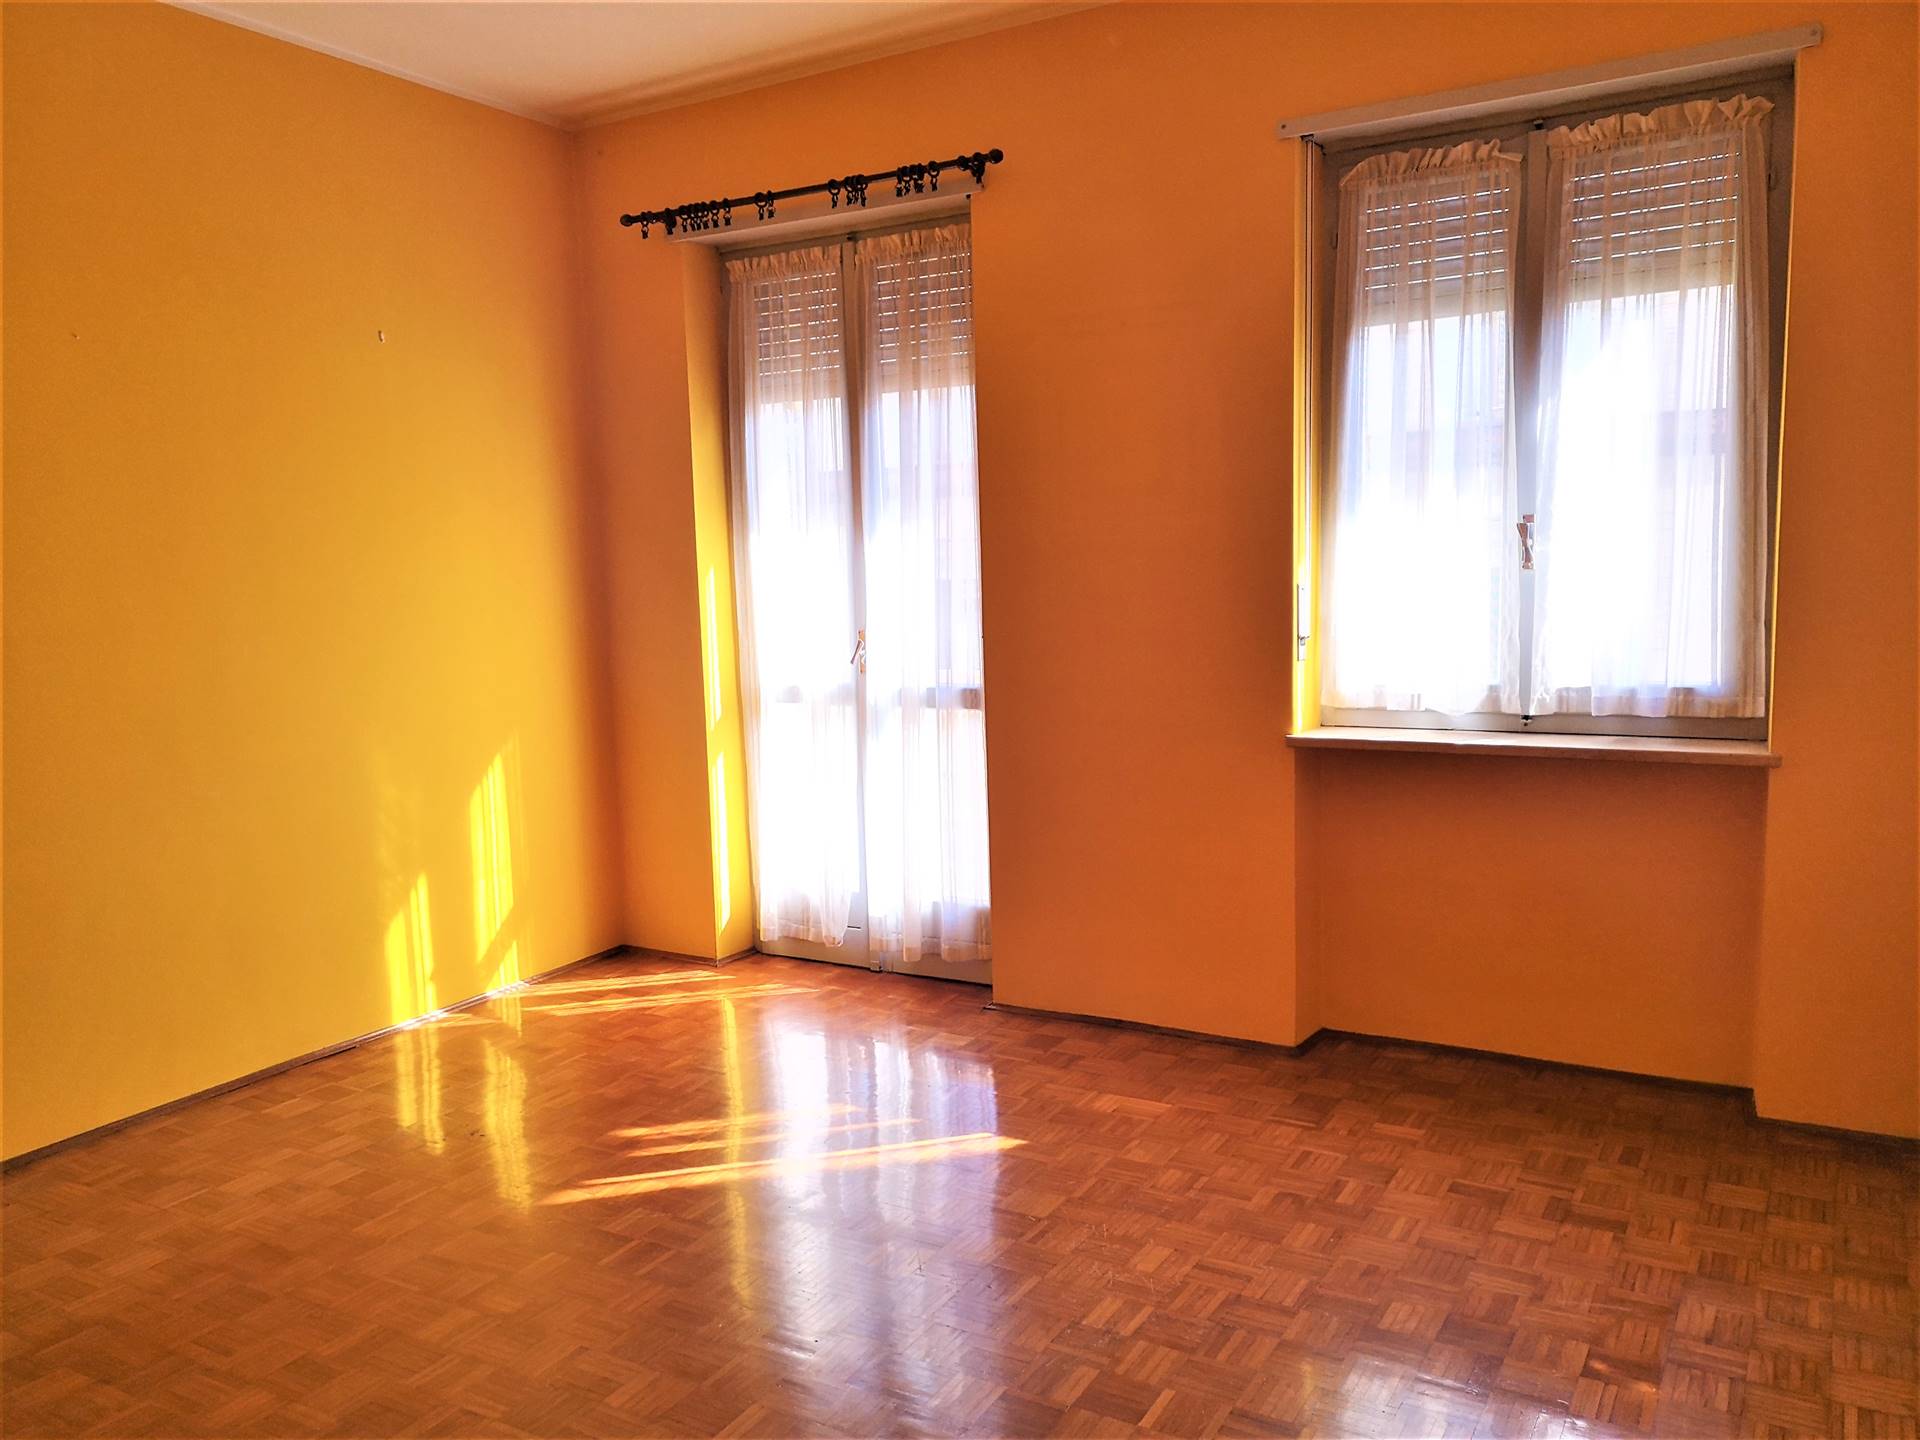 Appartamento in vendita a Mosso, 4 locali, prezzo € 17.000 | PortaleAgenzieImmobiliari.it